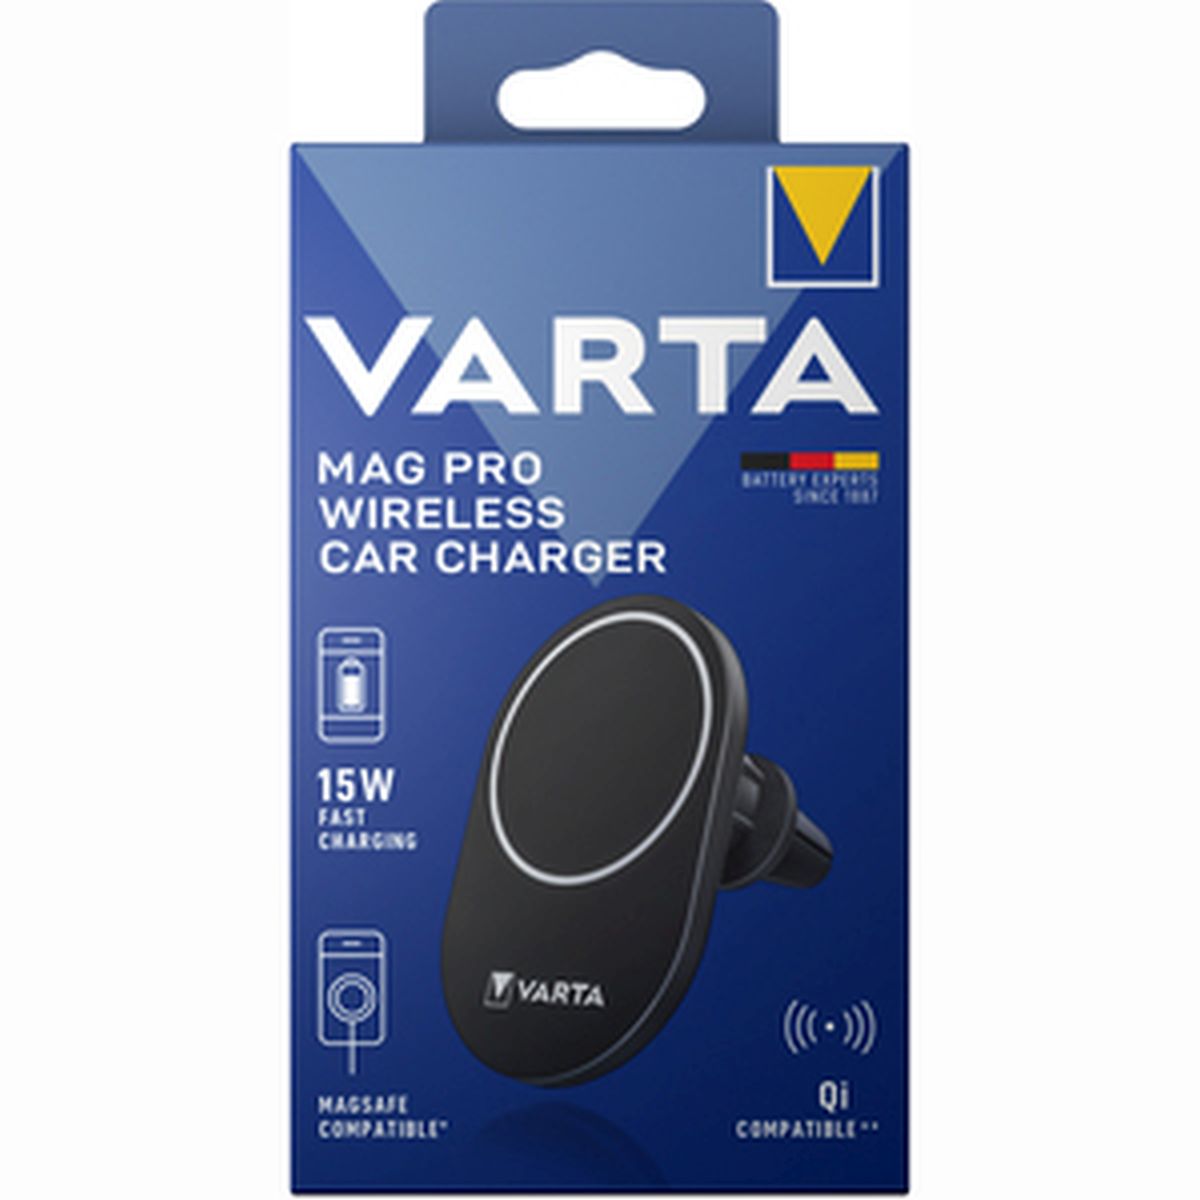 Varta Mag Pro Wireless Car Charger inkl. Autohalterung - Foto  Leistenschneider